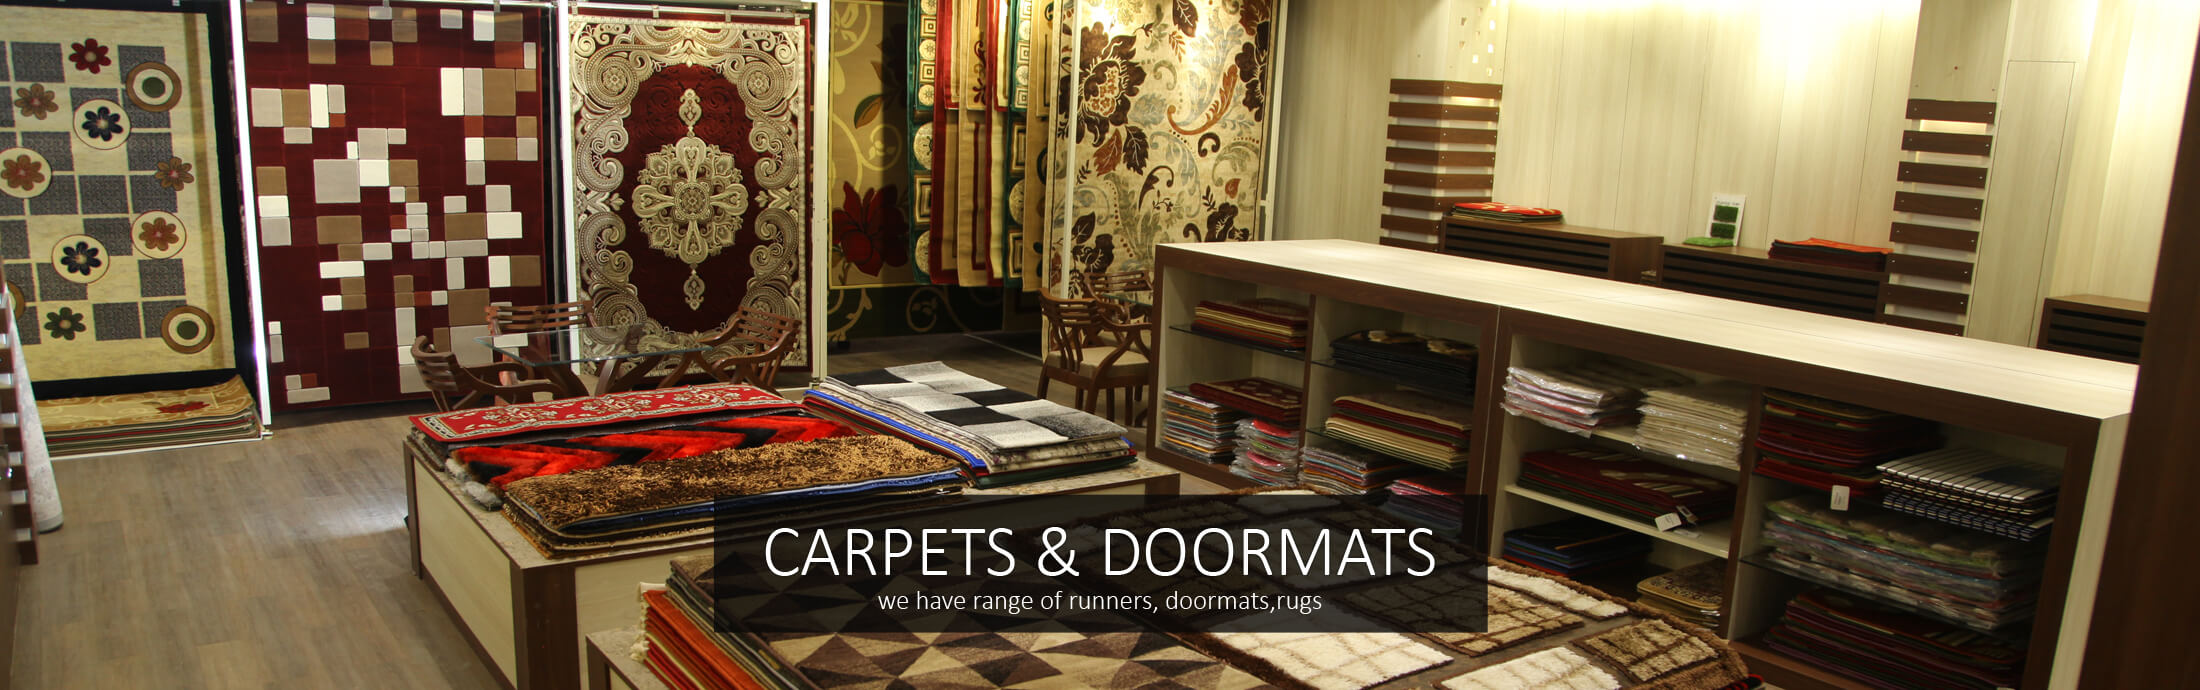 Carpets and Doormats